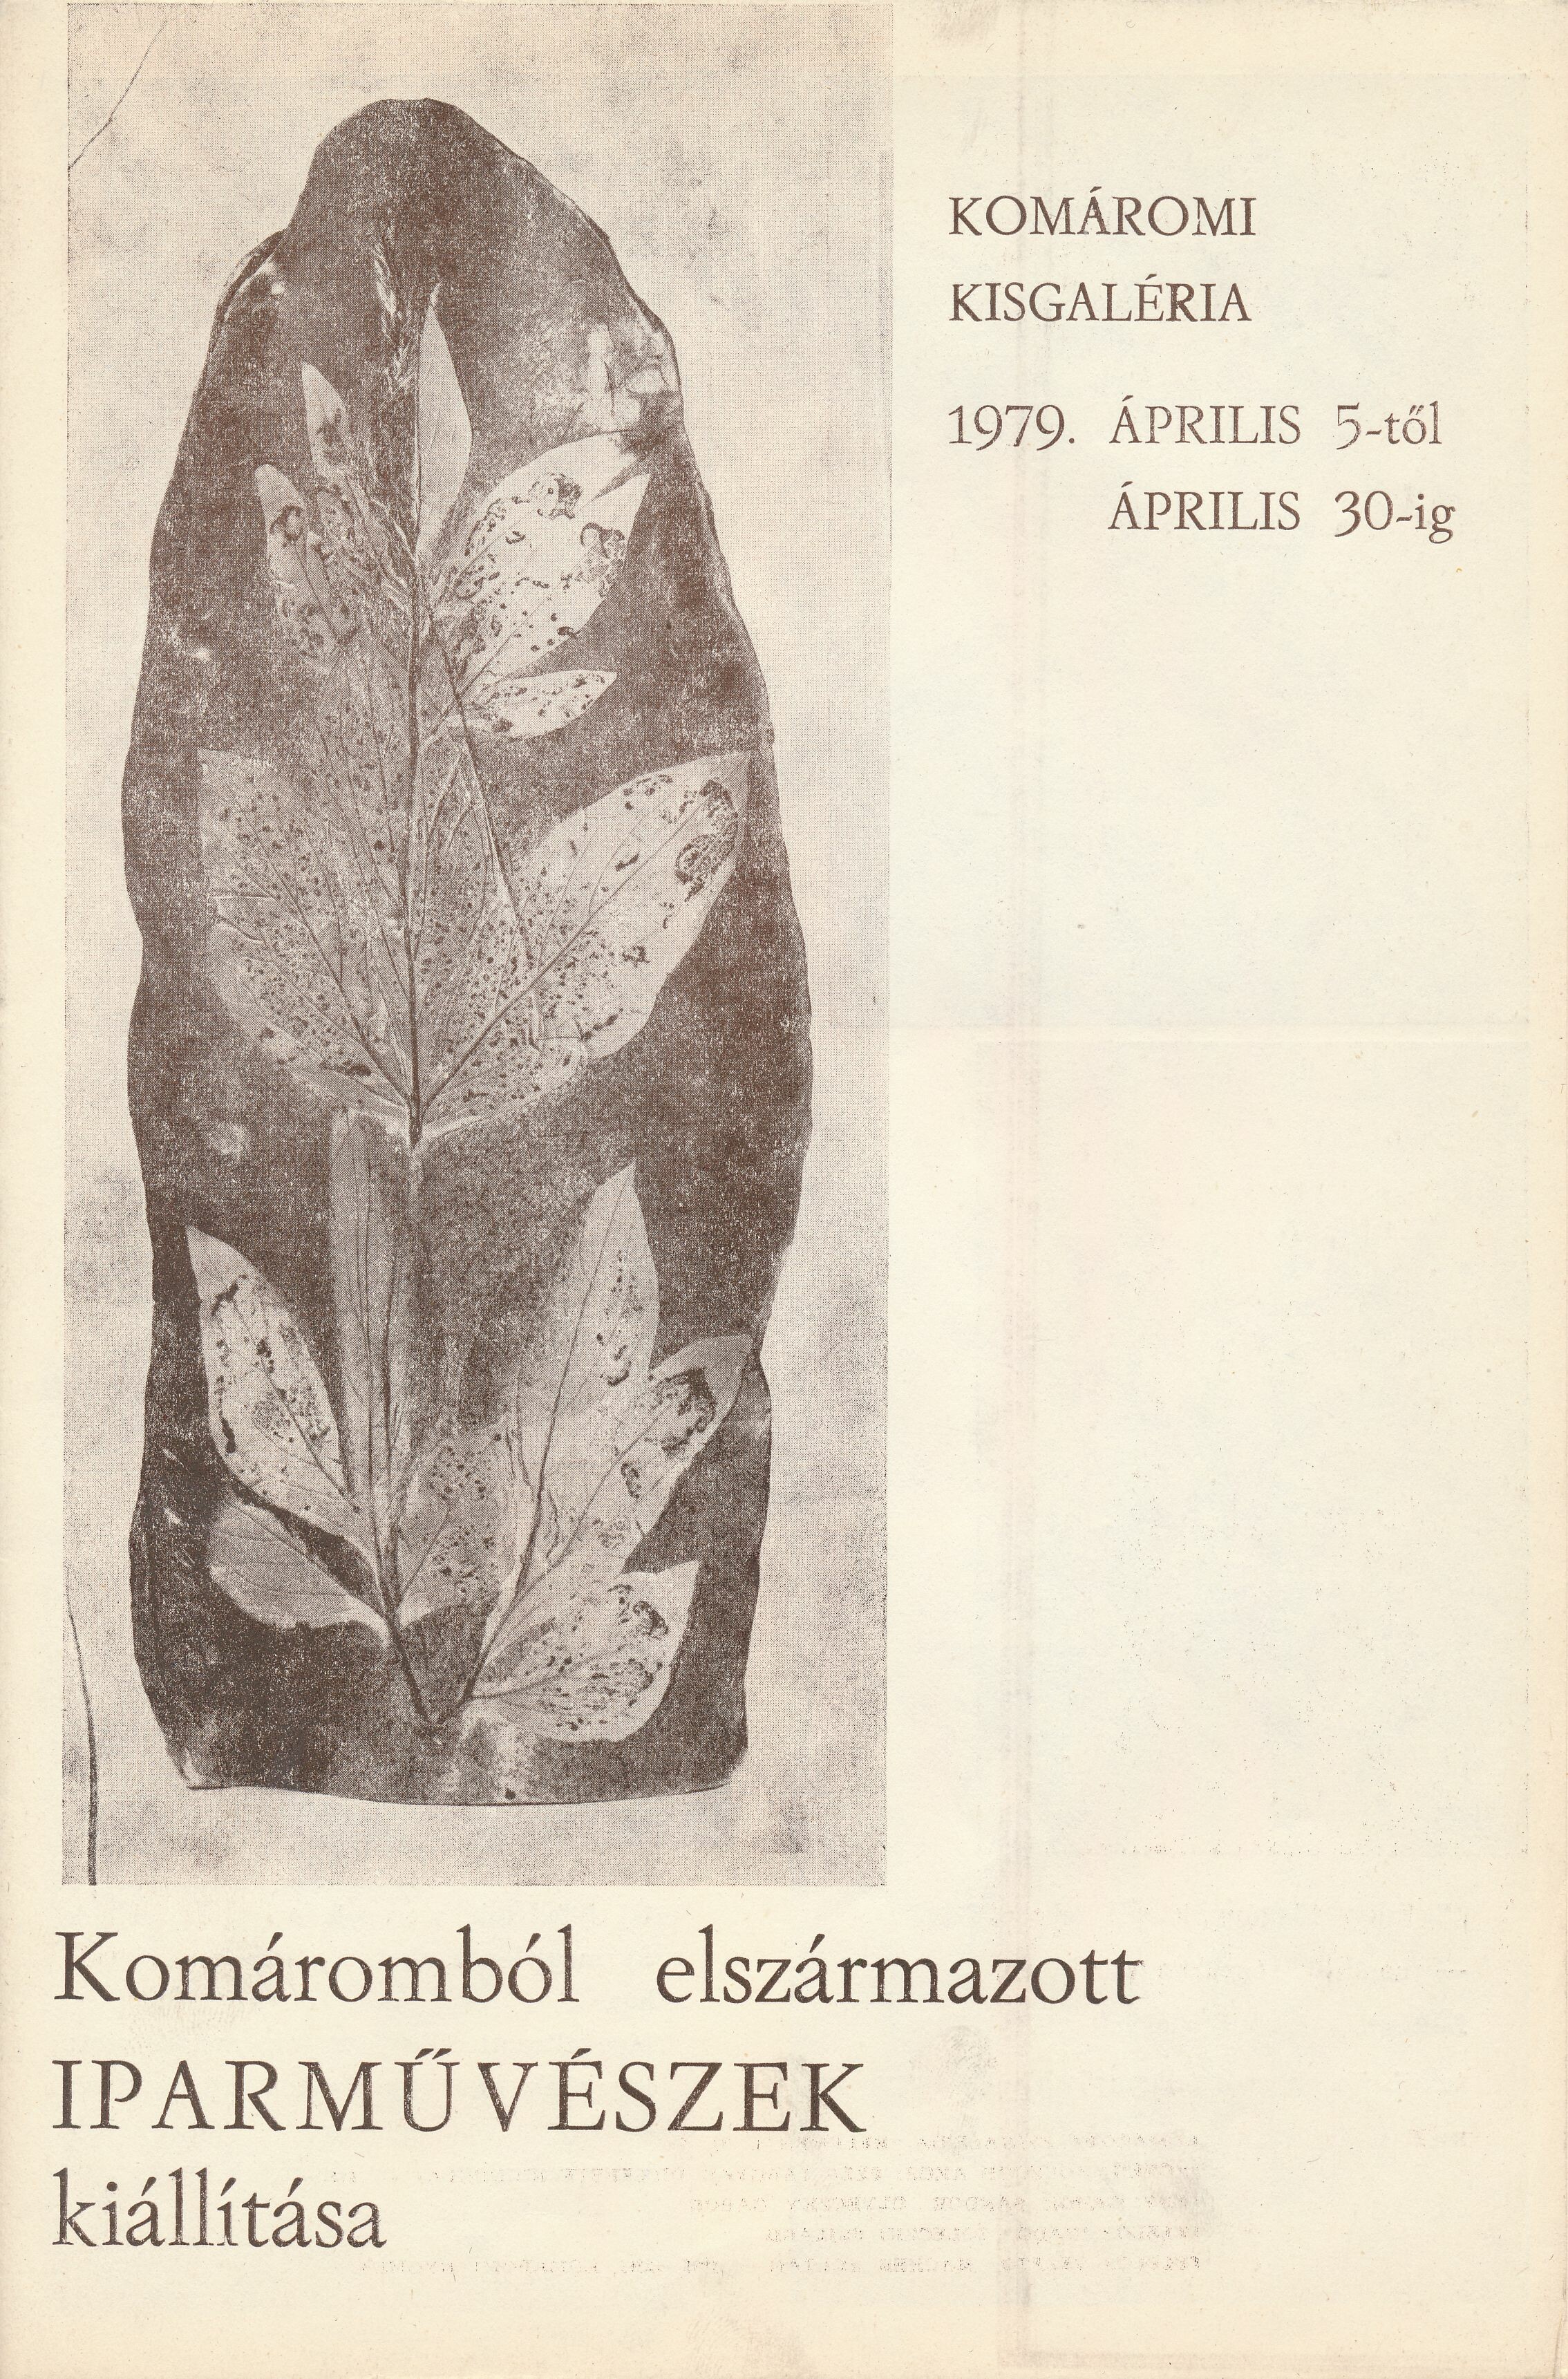 Komáromból elszármazott iparművészek kiállítása Komárom Kisgaléria 1979 (Design DigiTár – Iparművészeti archívum CC BY-NC-SA)